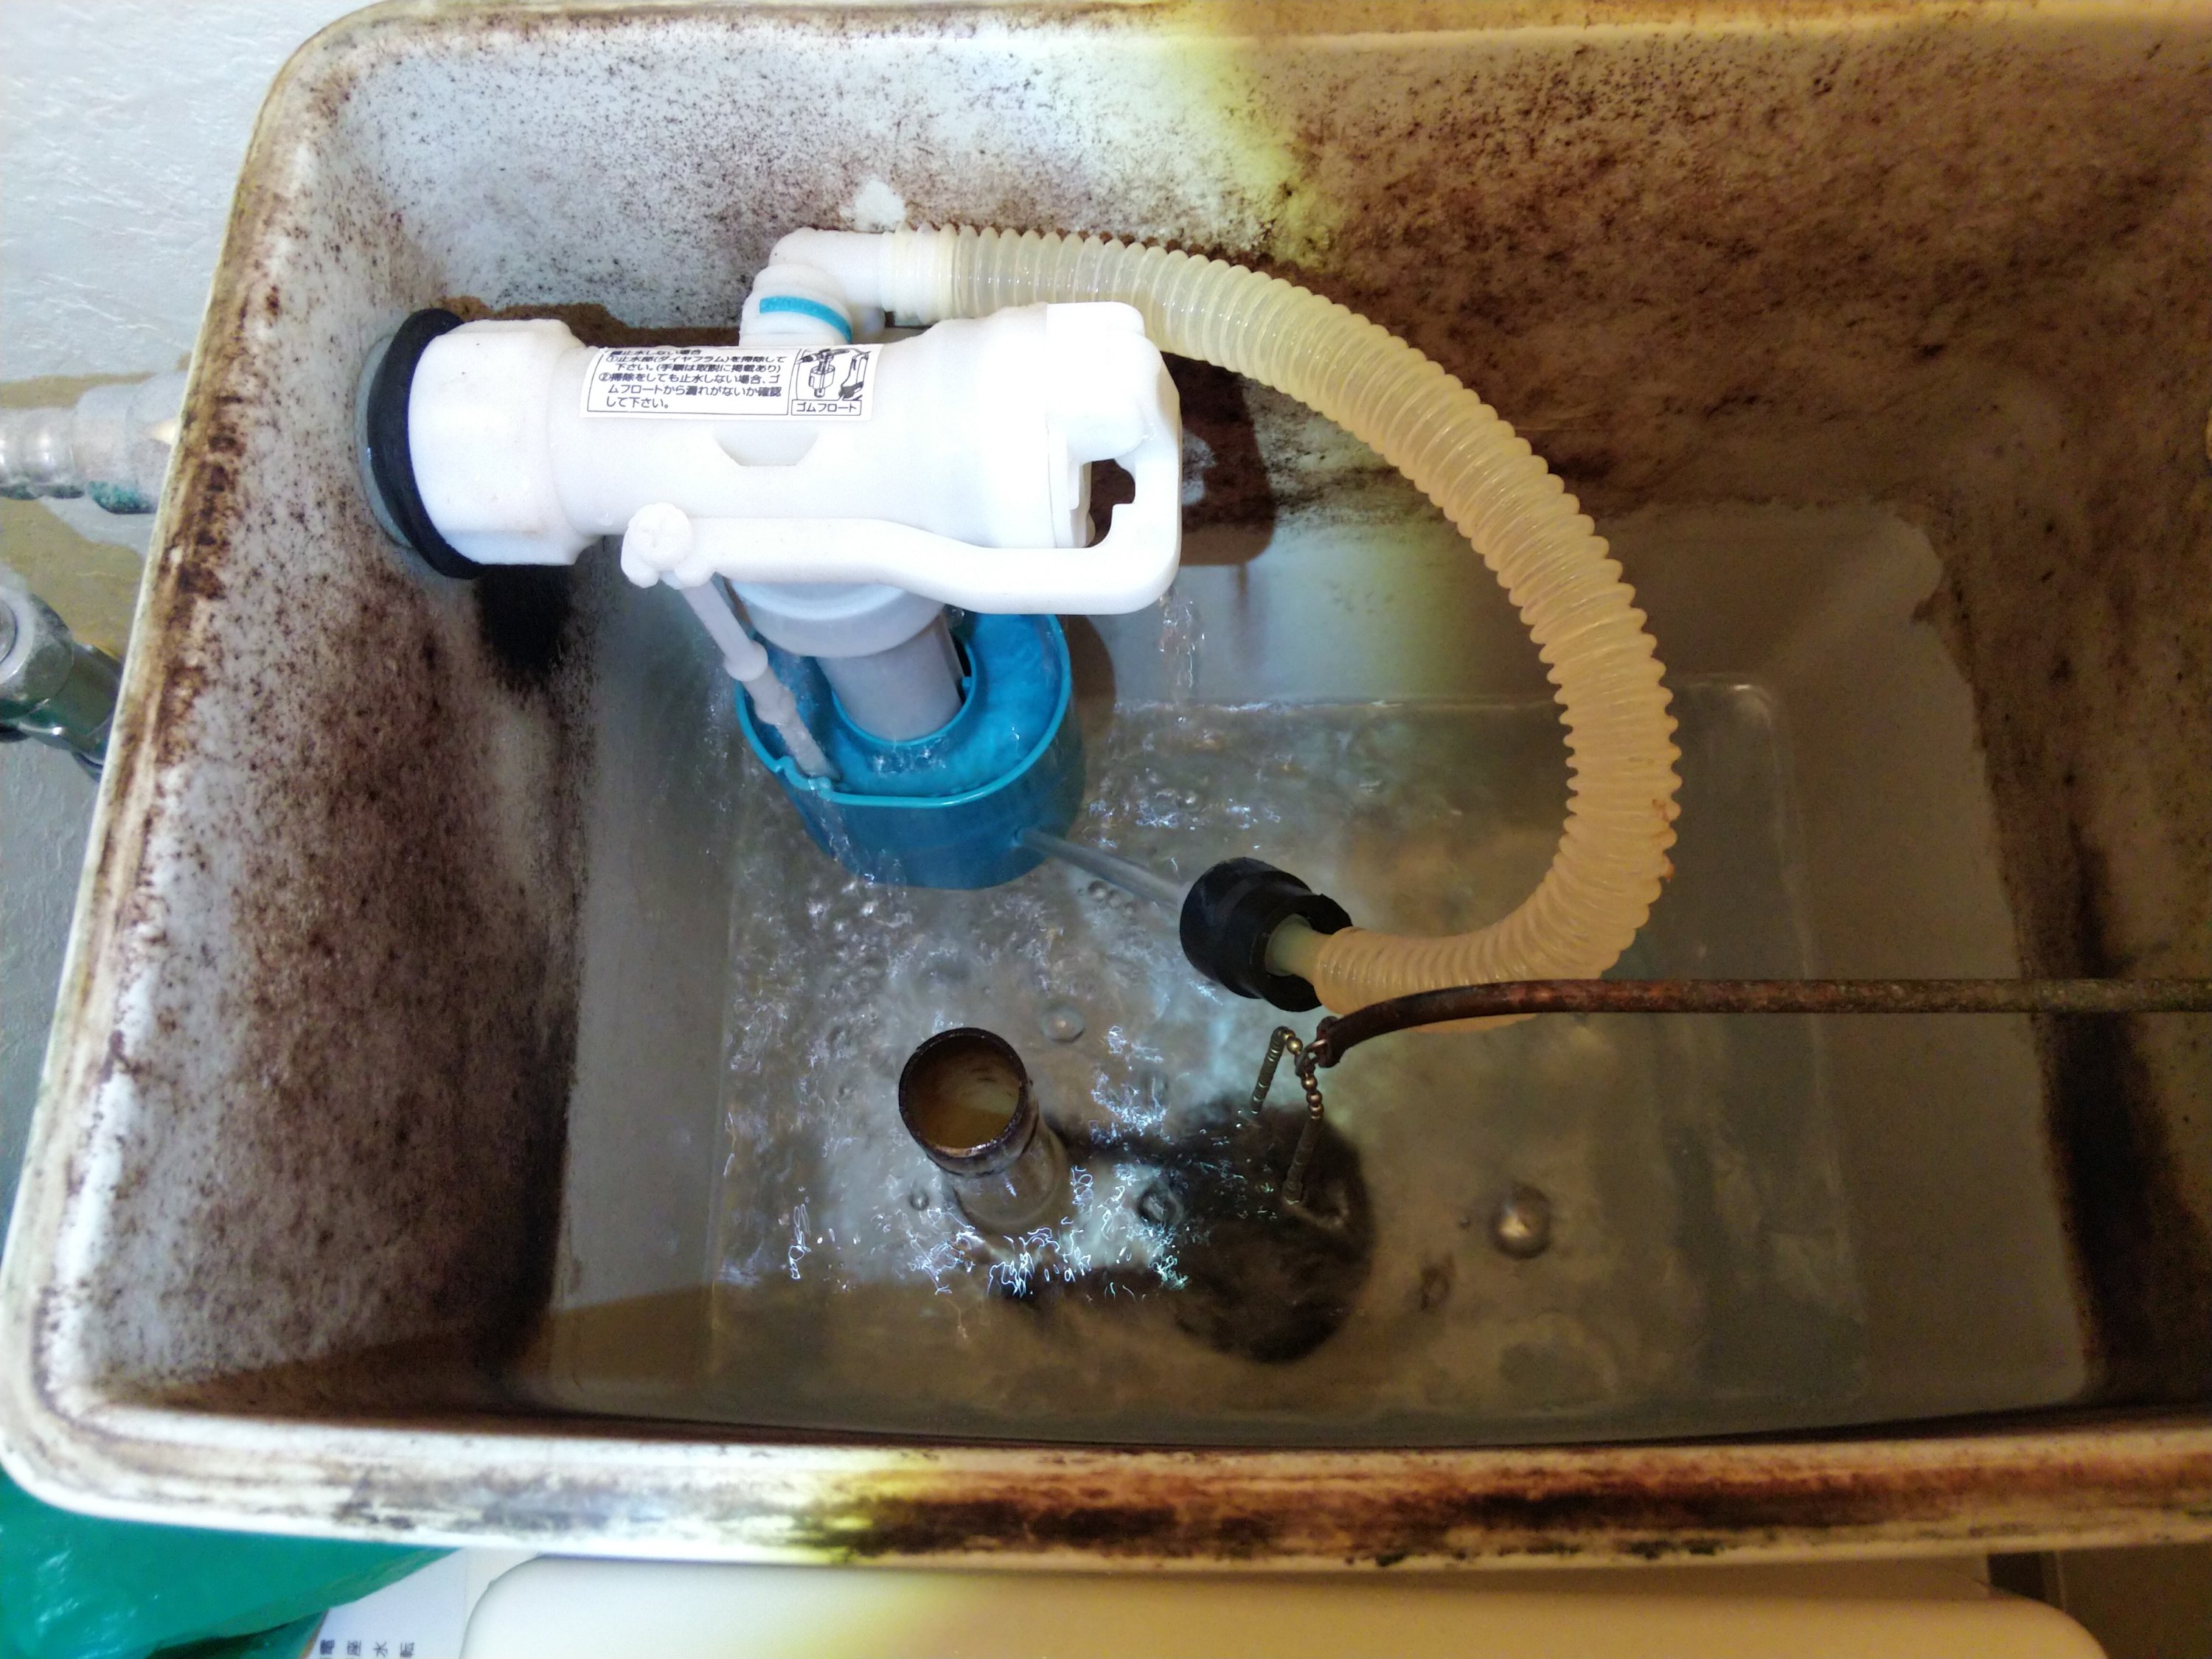 トイレ水漏れ修理 ダイヤフラム式 アクア・アテンド さいたま市・水漏れ トイレつまり修理 漏水調査 給湯器